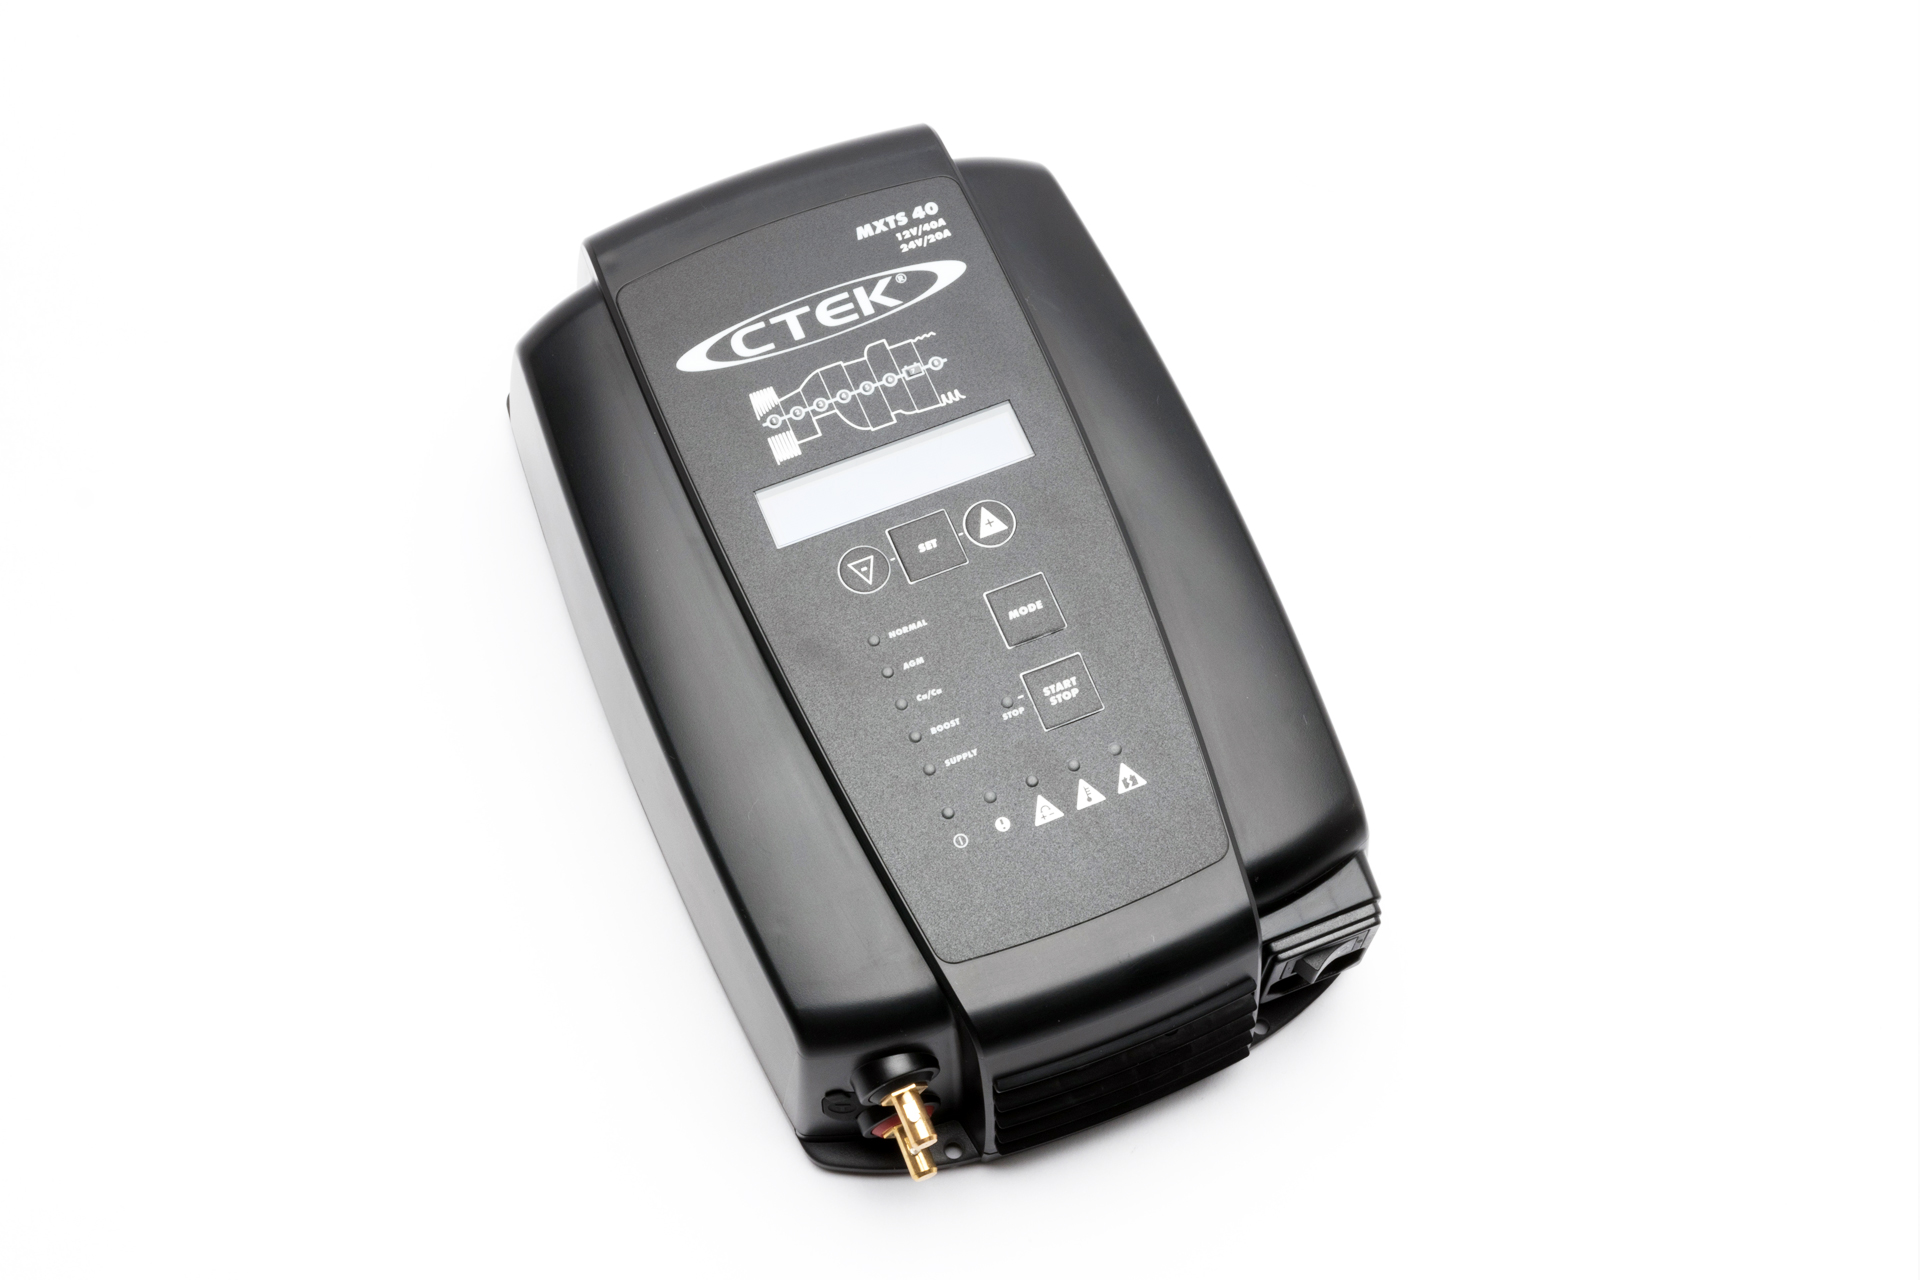 CTEK MXTS 40 Профессиональное зарядное устройство для аккумуляторов 12 и 24 Вольт